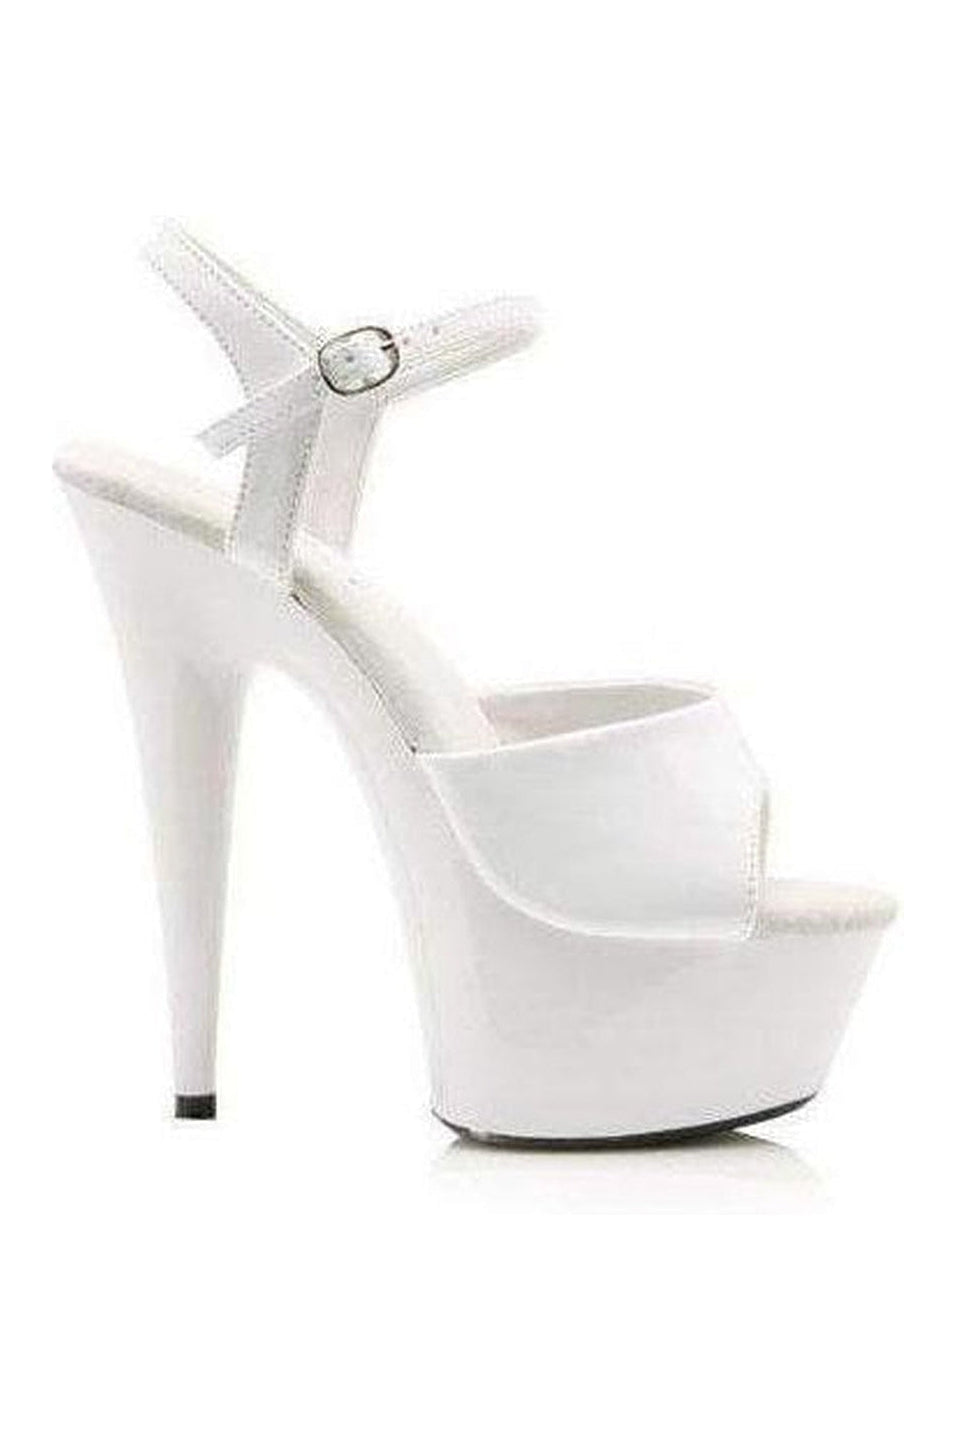 609-JULIET Platform Sandal | White Patent-Ellie Shoes-White-Sandals-SEXYSHOES.COM